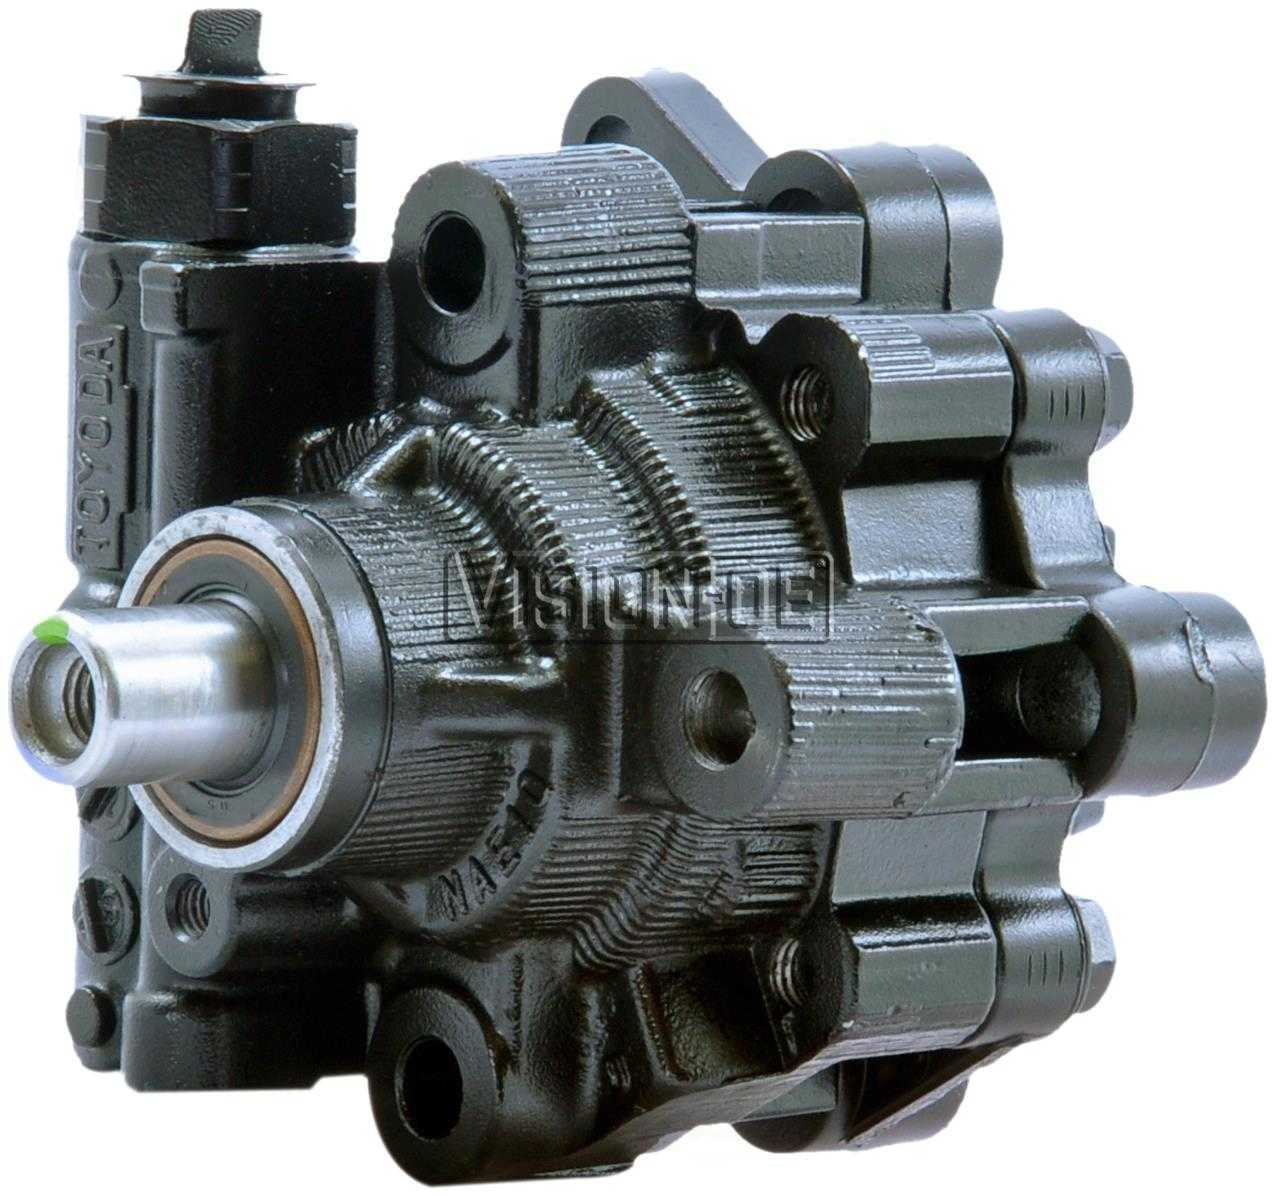 VISION-OE - Reman Power Steering Pump - VOE 990-0867